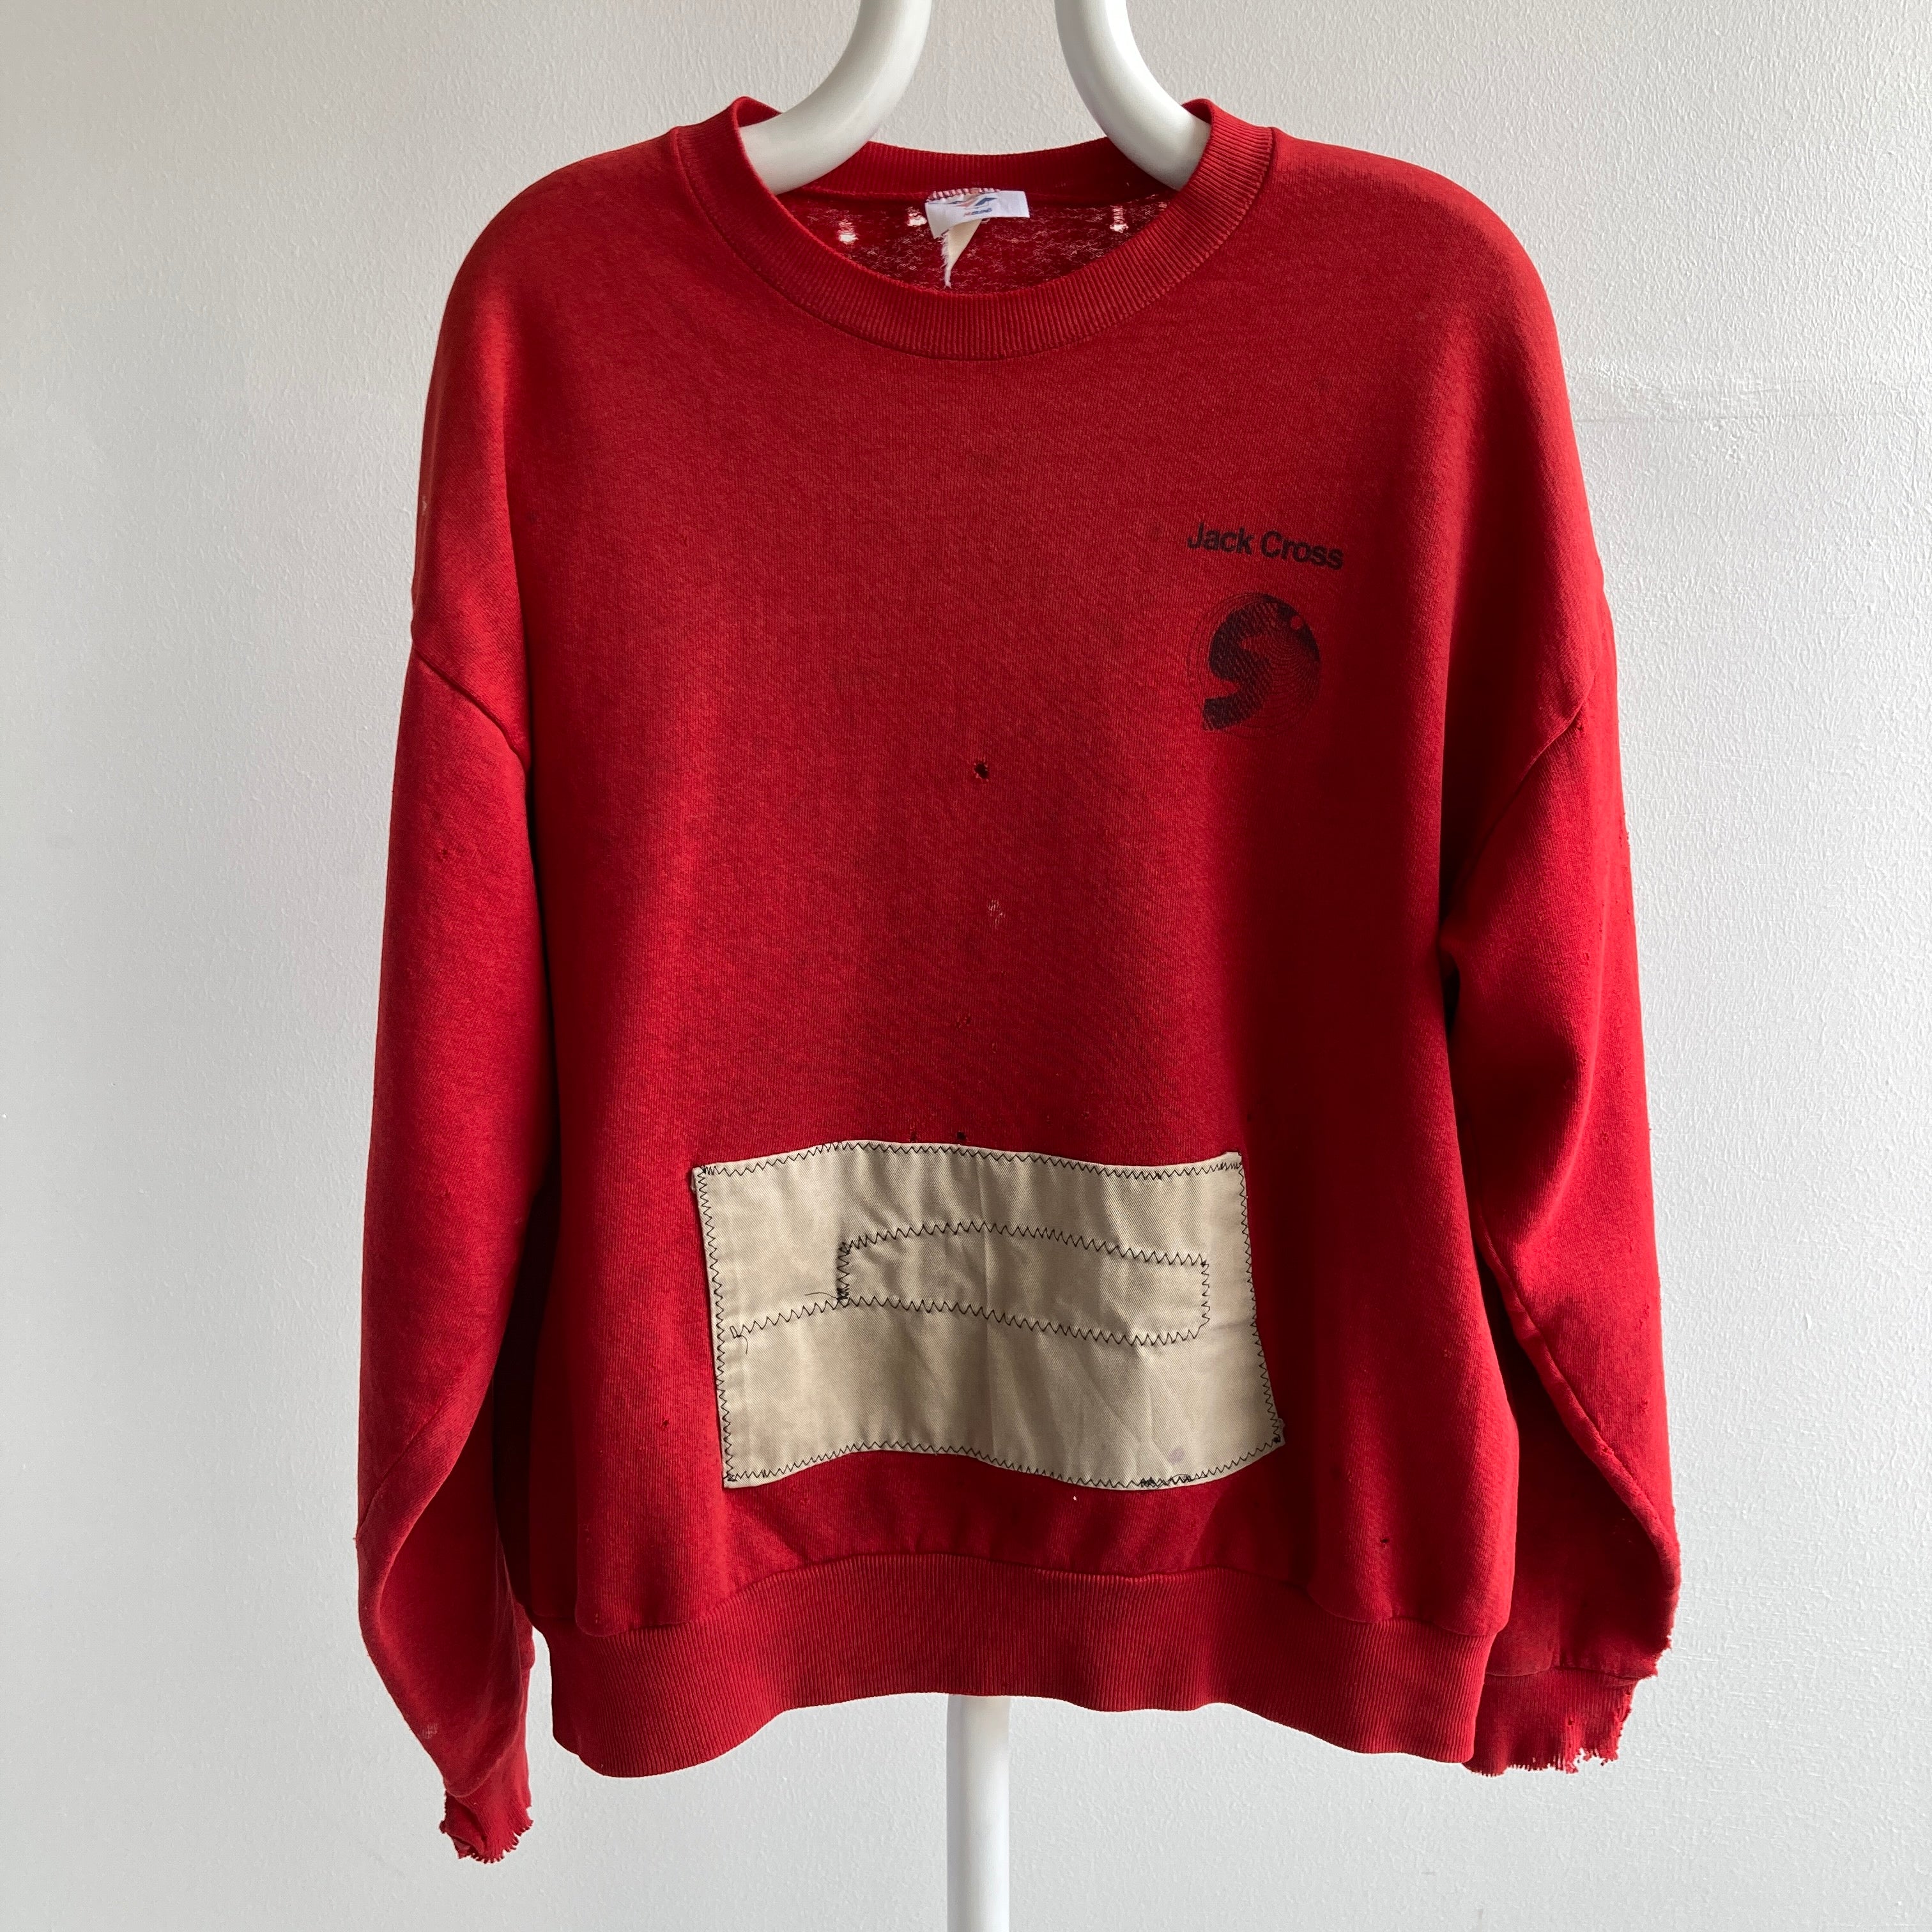 90's Beyond Destroyed, Patched, Then Destroyed Again Sweatshirt rouge et kaki taché d'huile et puis